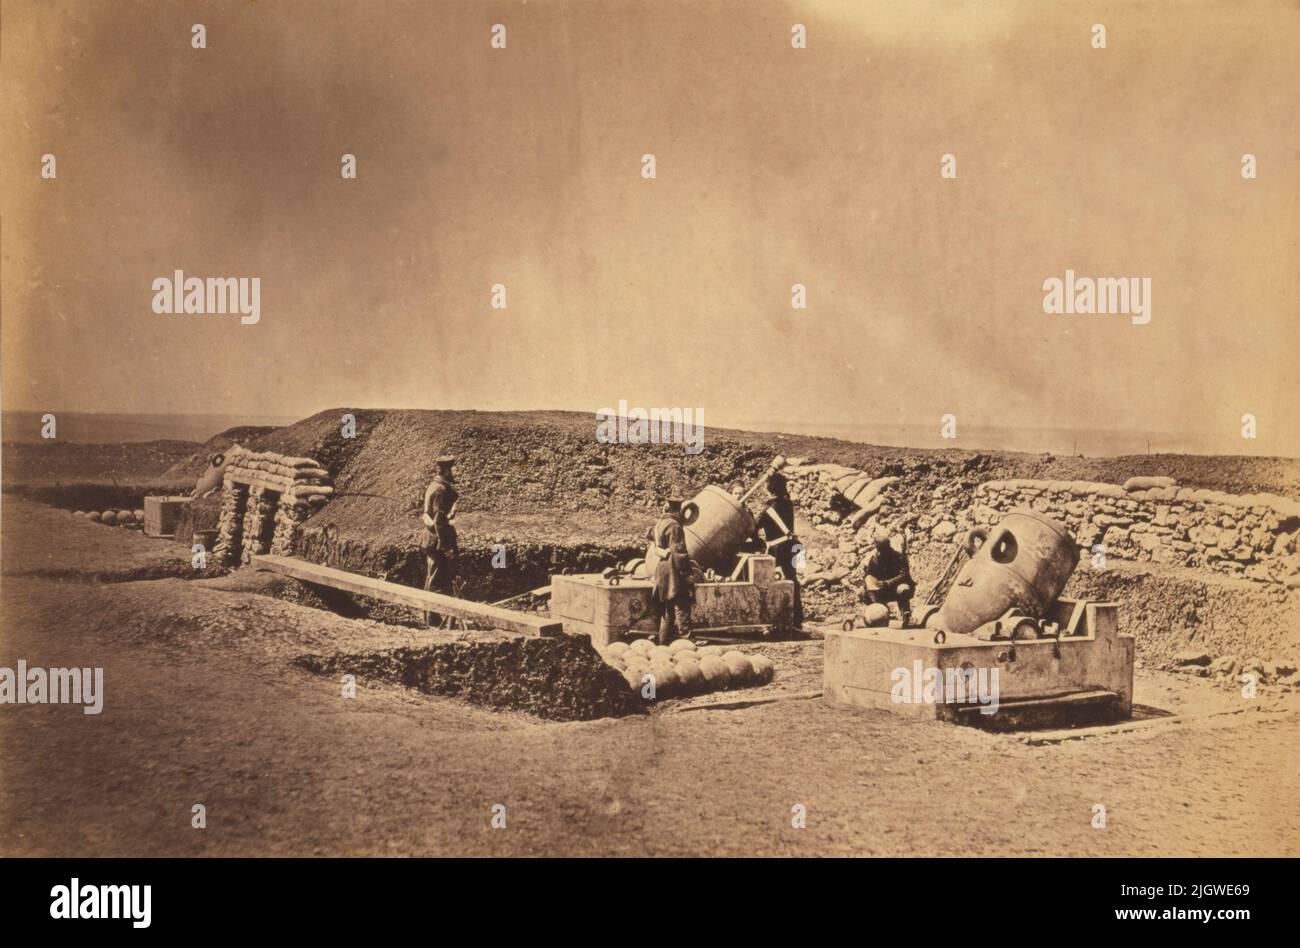 Ein Vintage-Foto von etwa 1855 britischen Soldaten der Light Division, die Mörserbatterien vor dem Picquet-Haus während der Belagerung des Sewastopol-Krimkrieges von 1853 bis 1856 aussortiert haben. Aufgenommen vom Fotografen Roger Fenton Stockfoto